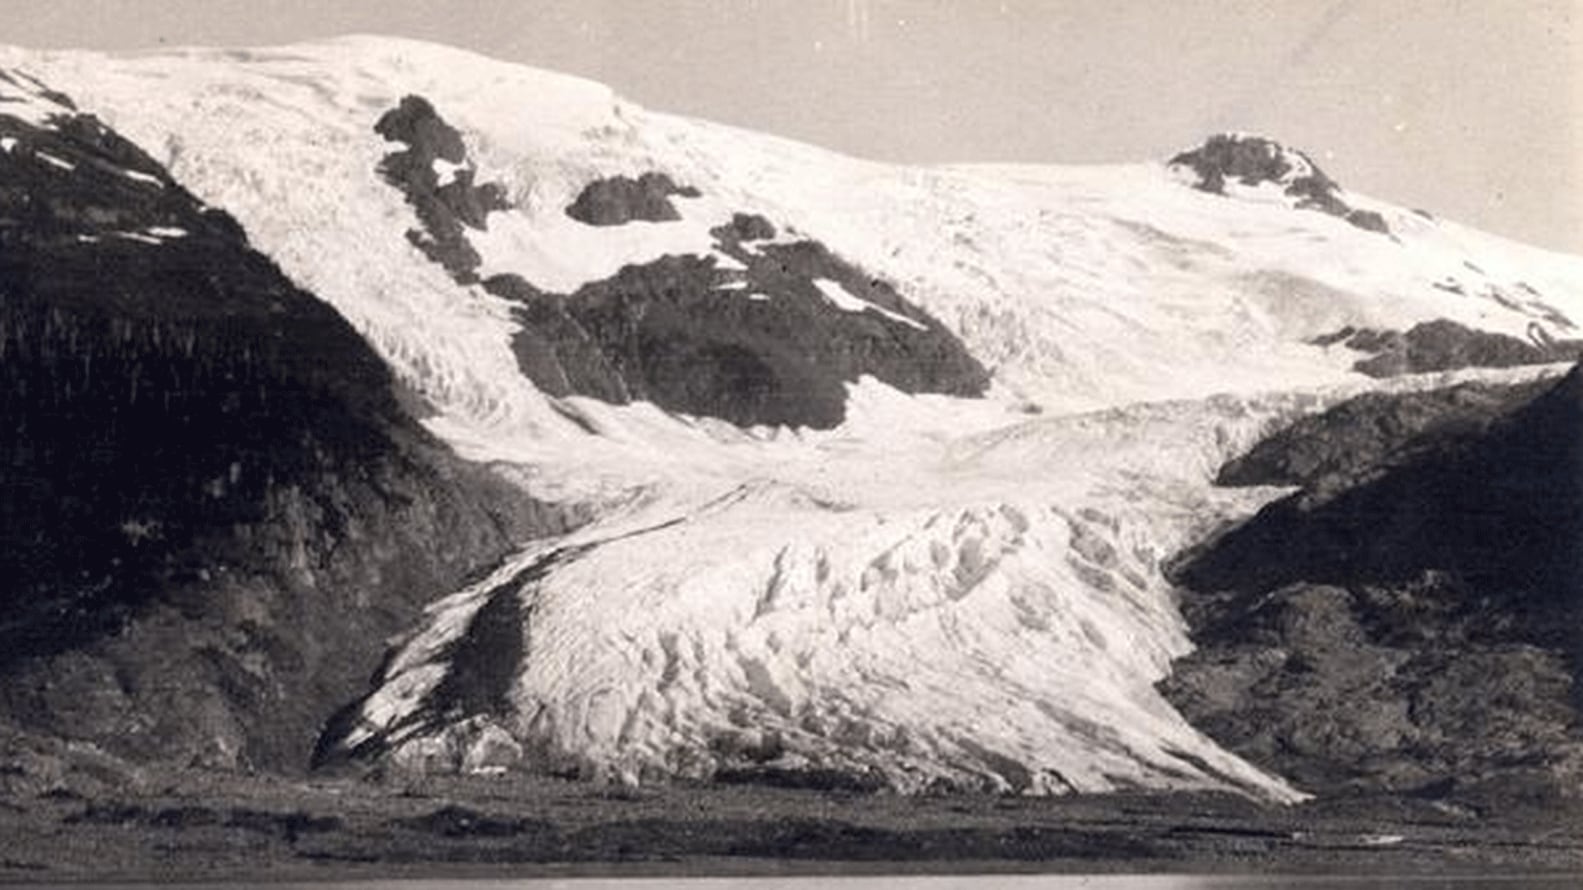 La fotografía de 1905 muestra que al Glaciar Tobogán que fue adelgazando y retrocediendo, y rodeado por una gran roca.&nbsp;Esto sugiere que el retroceso y adelgazamiento comenzaron a mediados y finales del siglo 19 usgs.gov 163